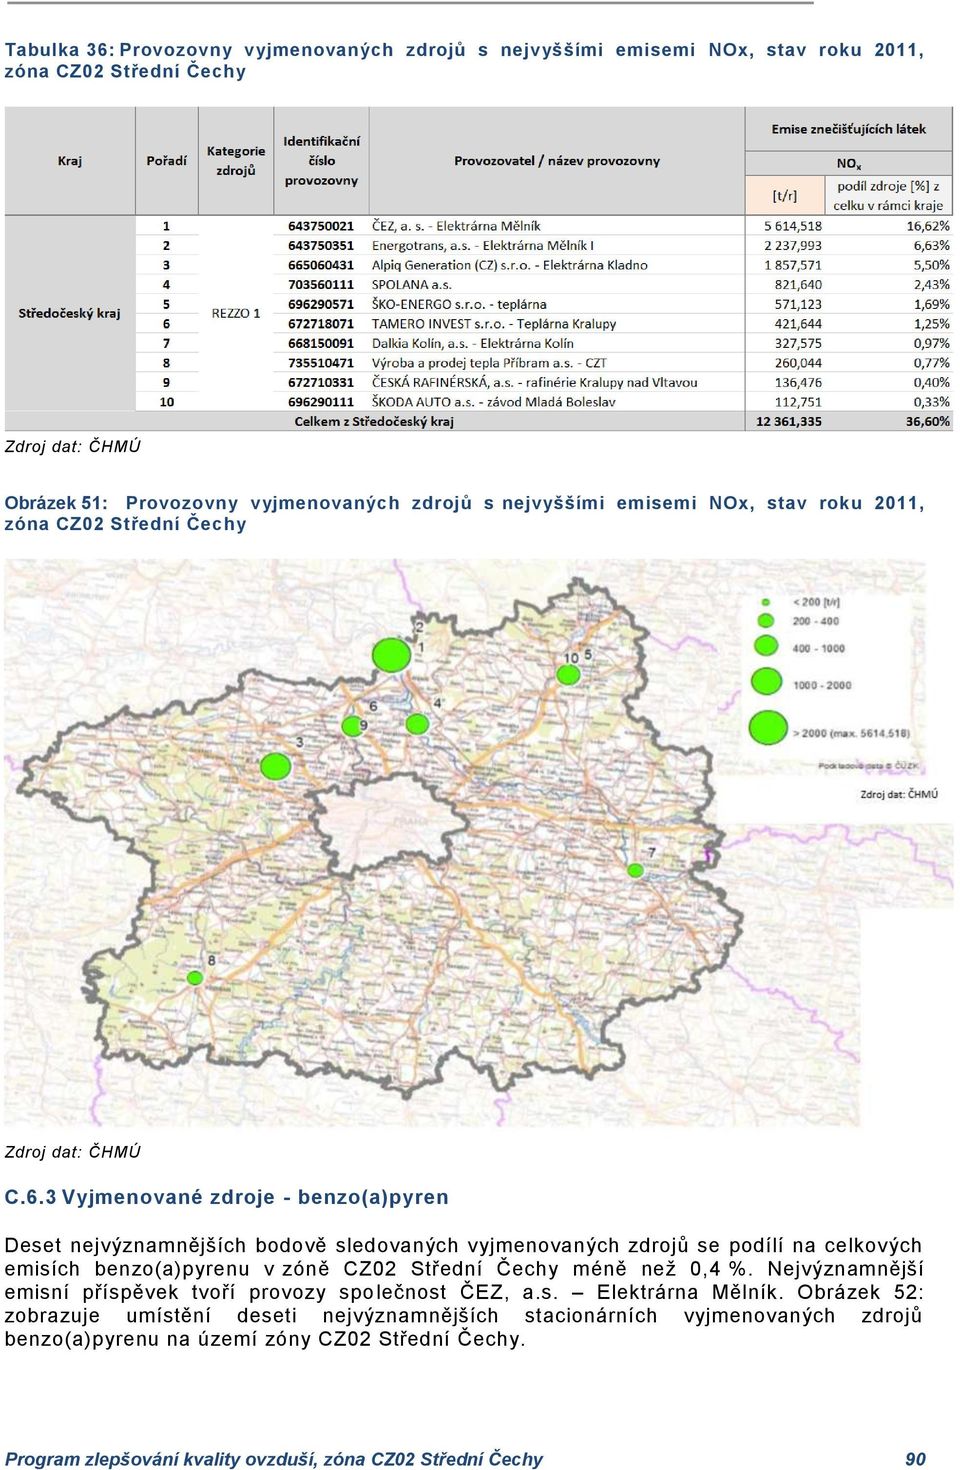 3 Vyjmenované zdroje - benzo(a)pyren Deset nejvýznamnějších bodově sledovaných vyjmenovaných zdrojů se podílí na celkových emisích benzo(a)pyrenu v zóně CZ02 Střední Čechy méně než